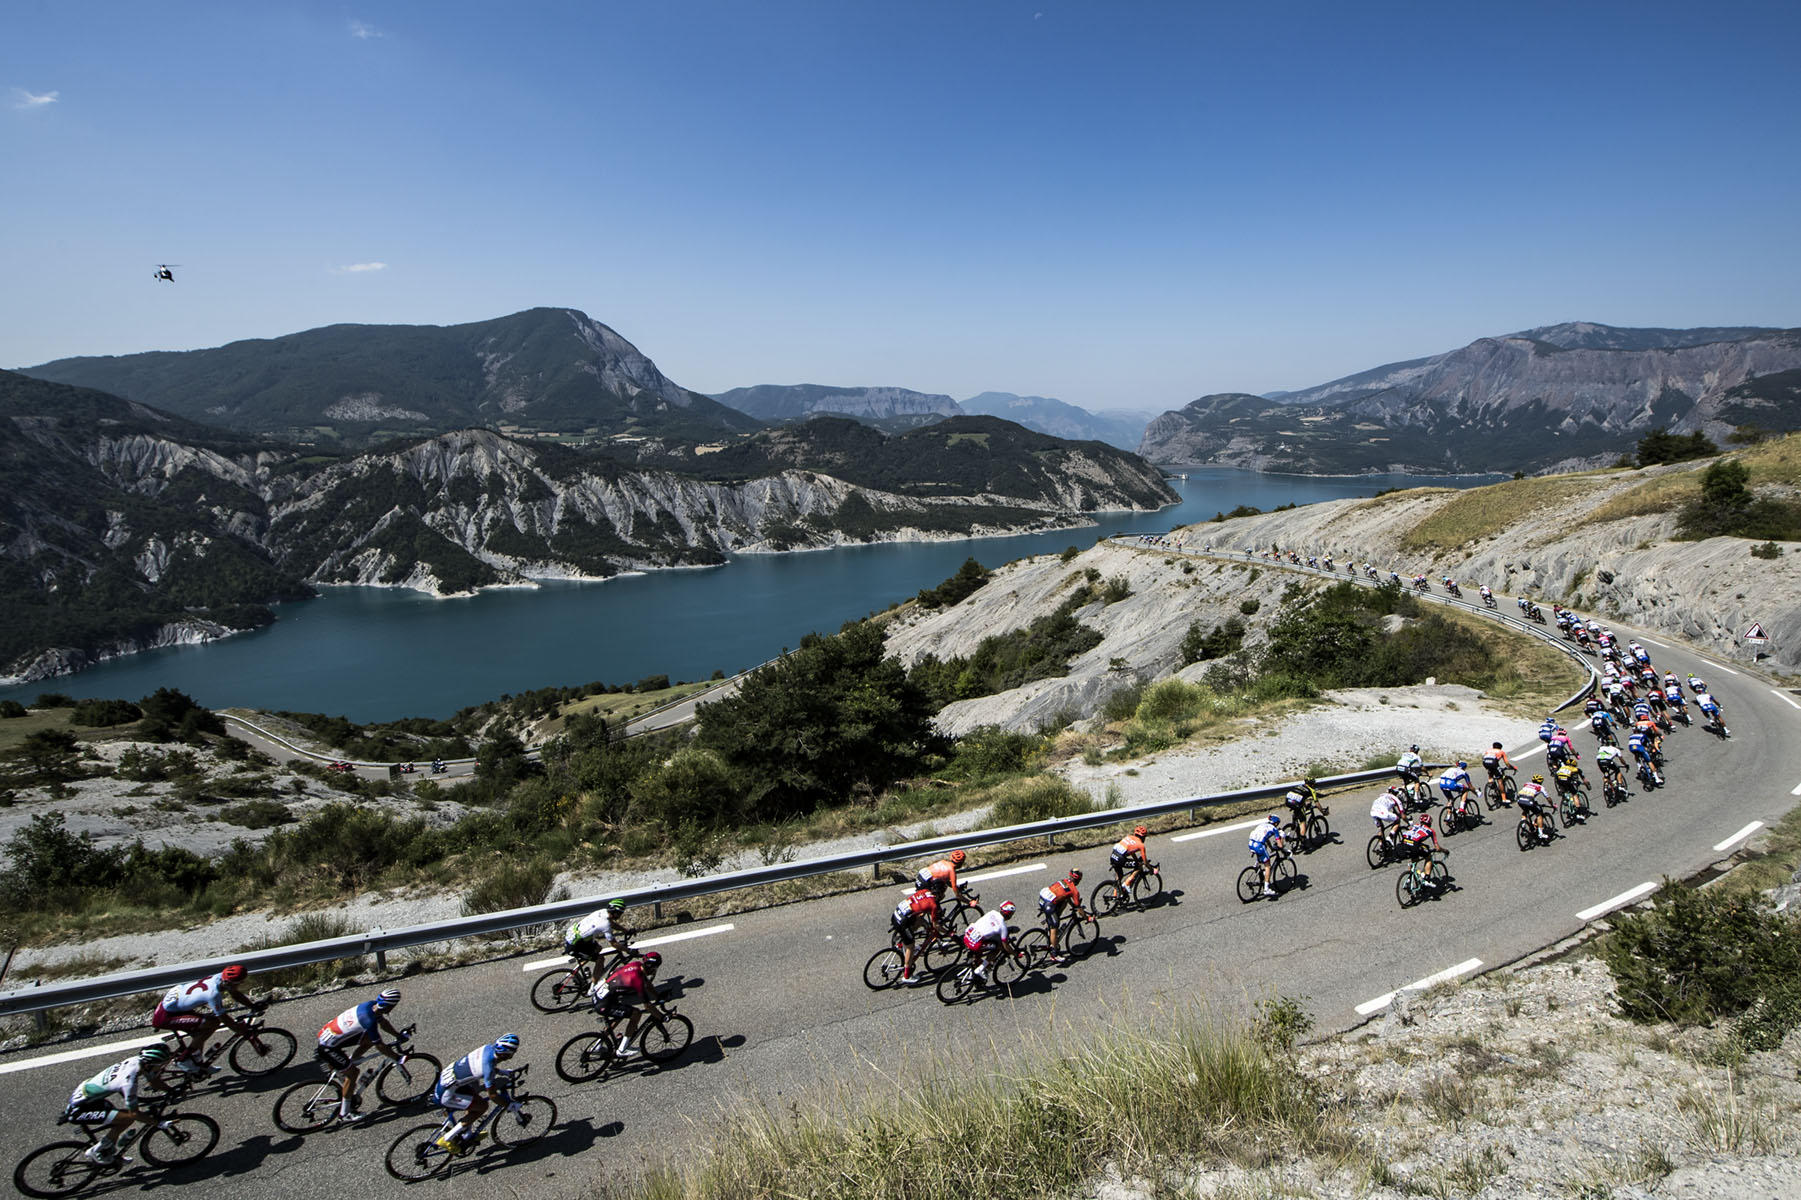 Tour de France 2019 - Stage Eighteen - The peloton descends towards Lac de Serre Poncon